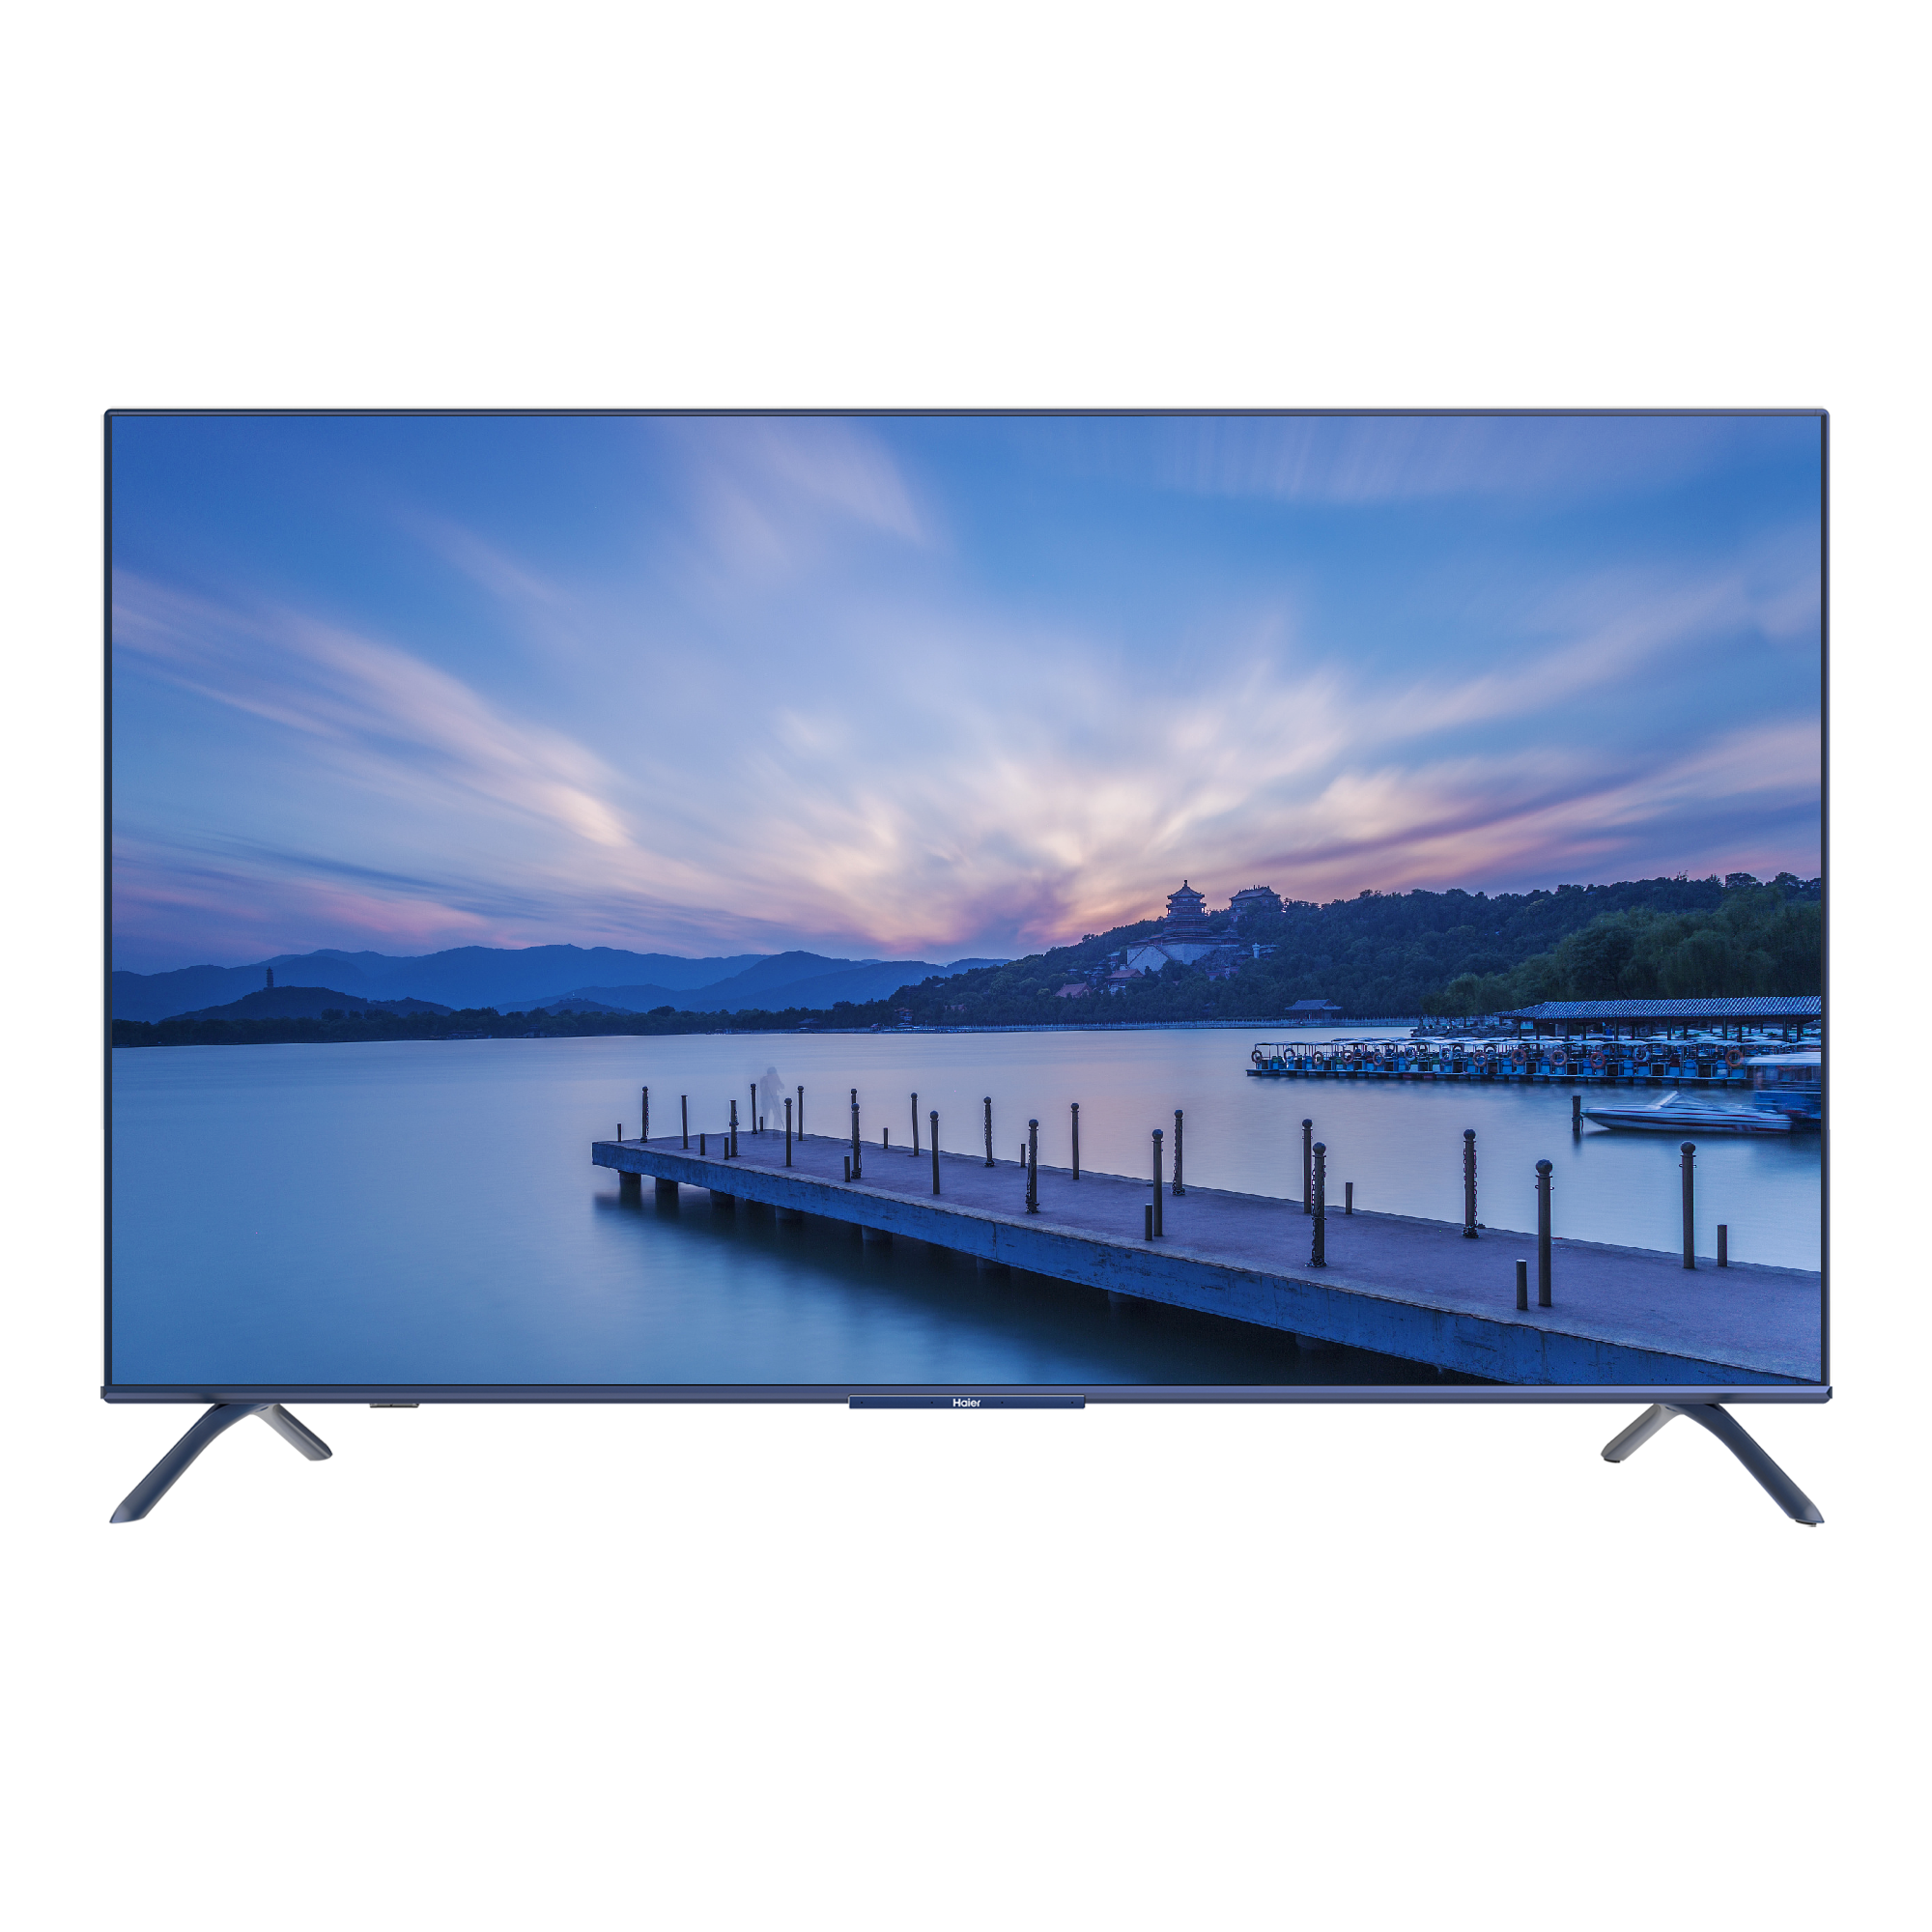 海尔u6系列电视产品参考图以海尔电视u6为例,除在家能呈现4k超高清